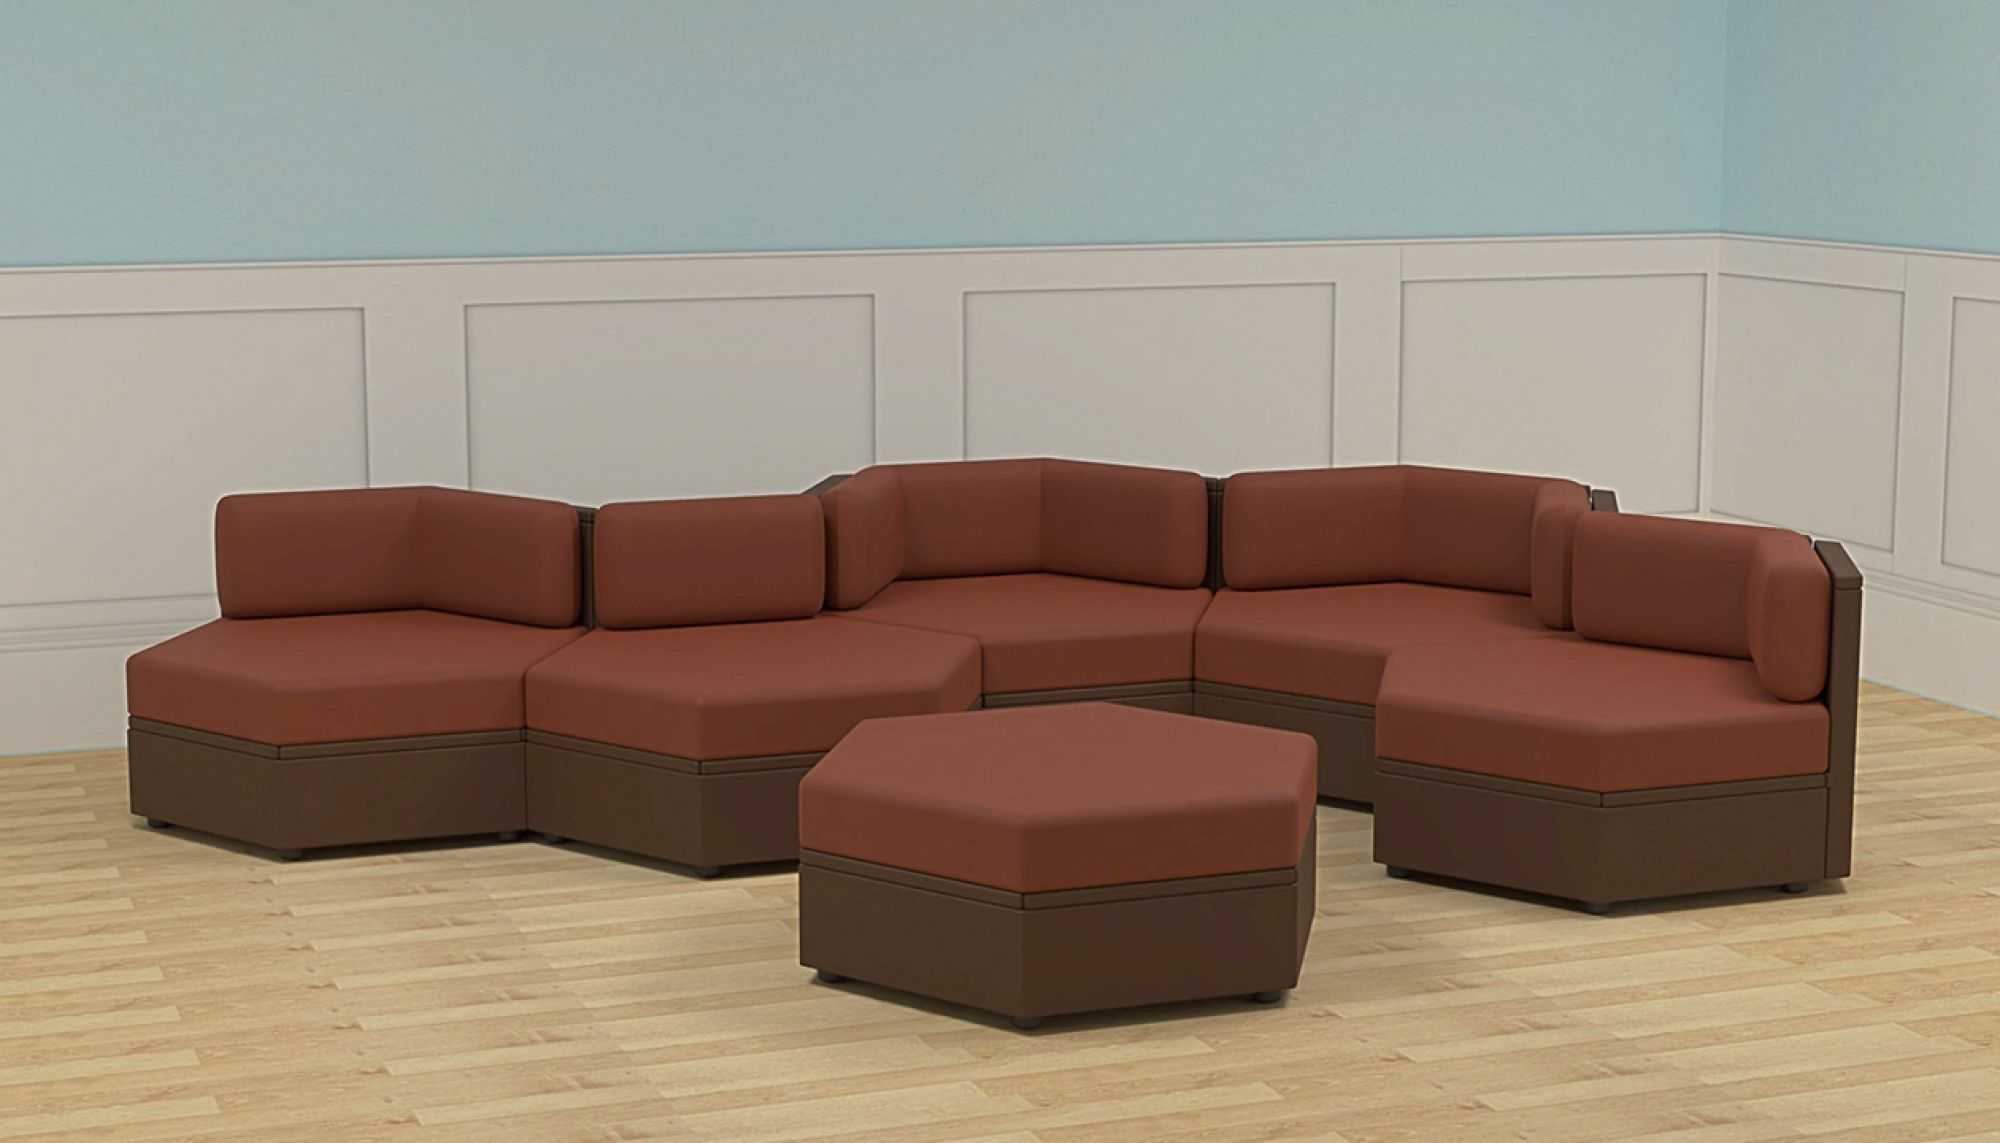 Jonathan Louis furniture design by Otis Design Lab